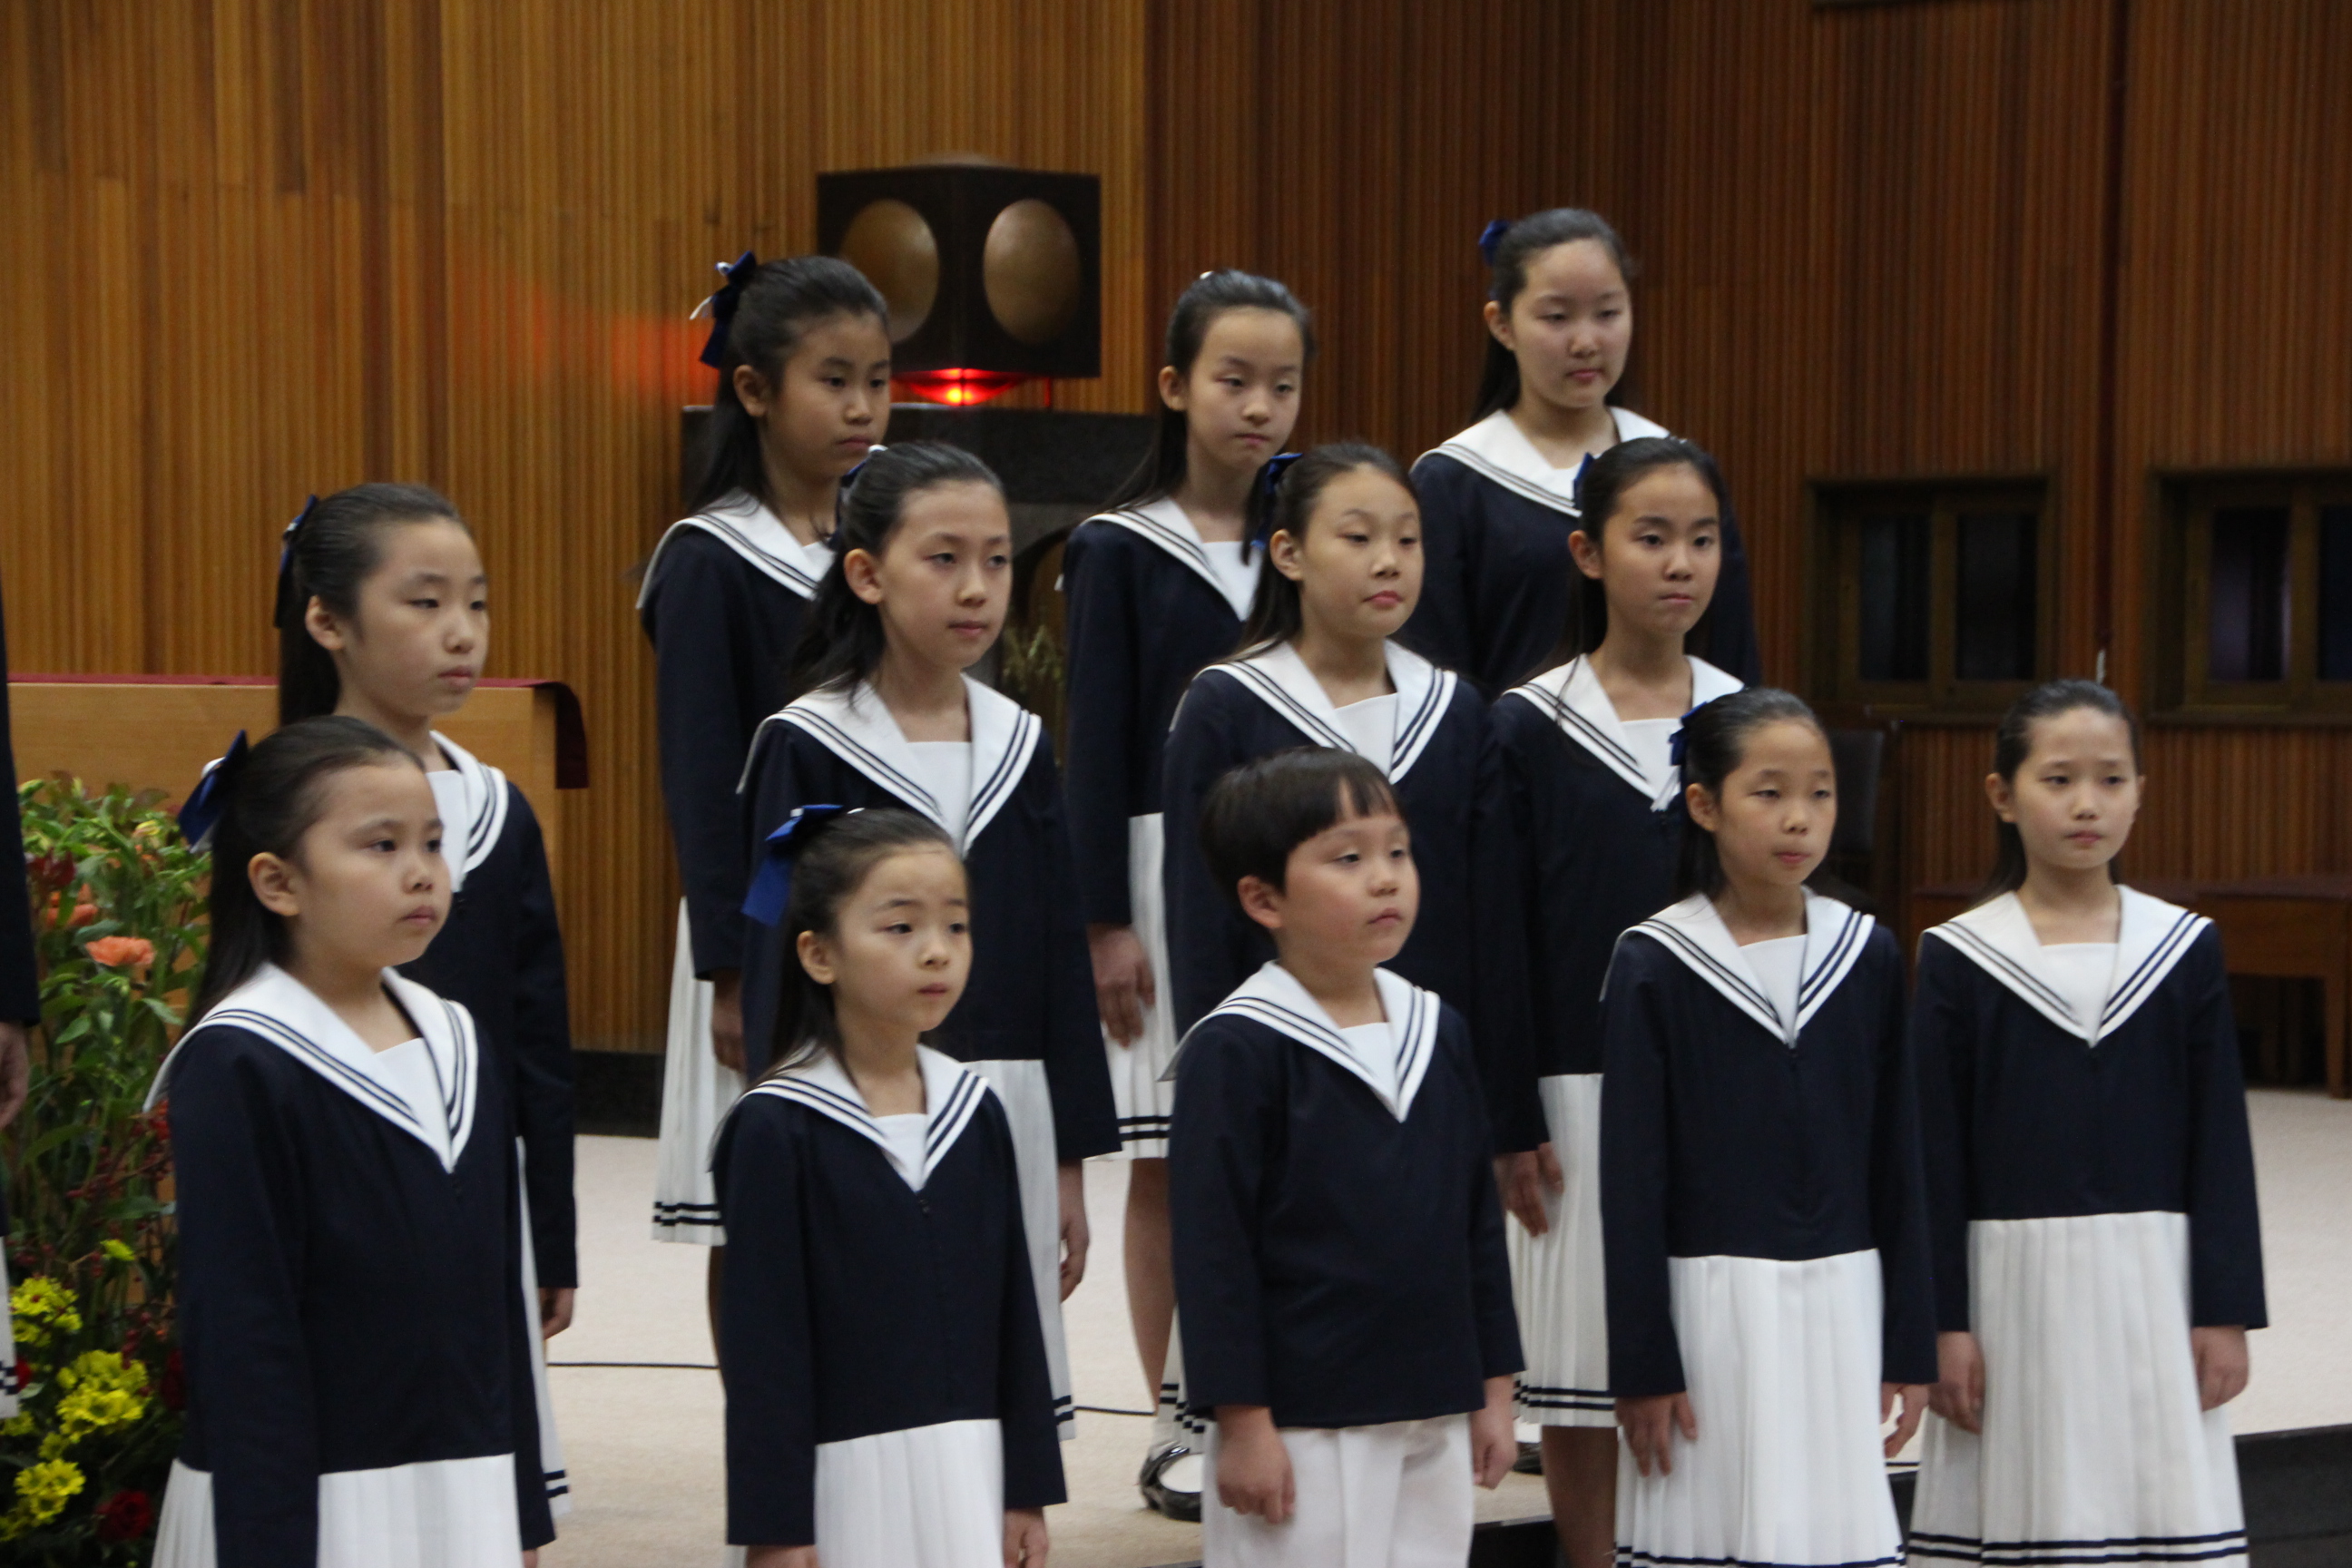 반포성당 어린이합창단 안젤루스 공연(2015.10.30)의 관련된 이미지 입니다.